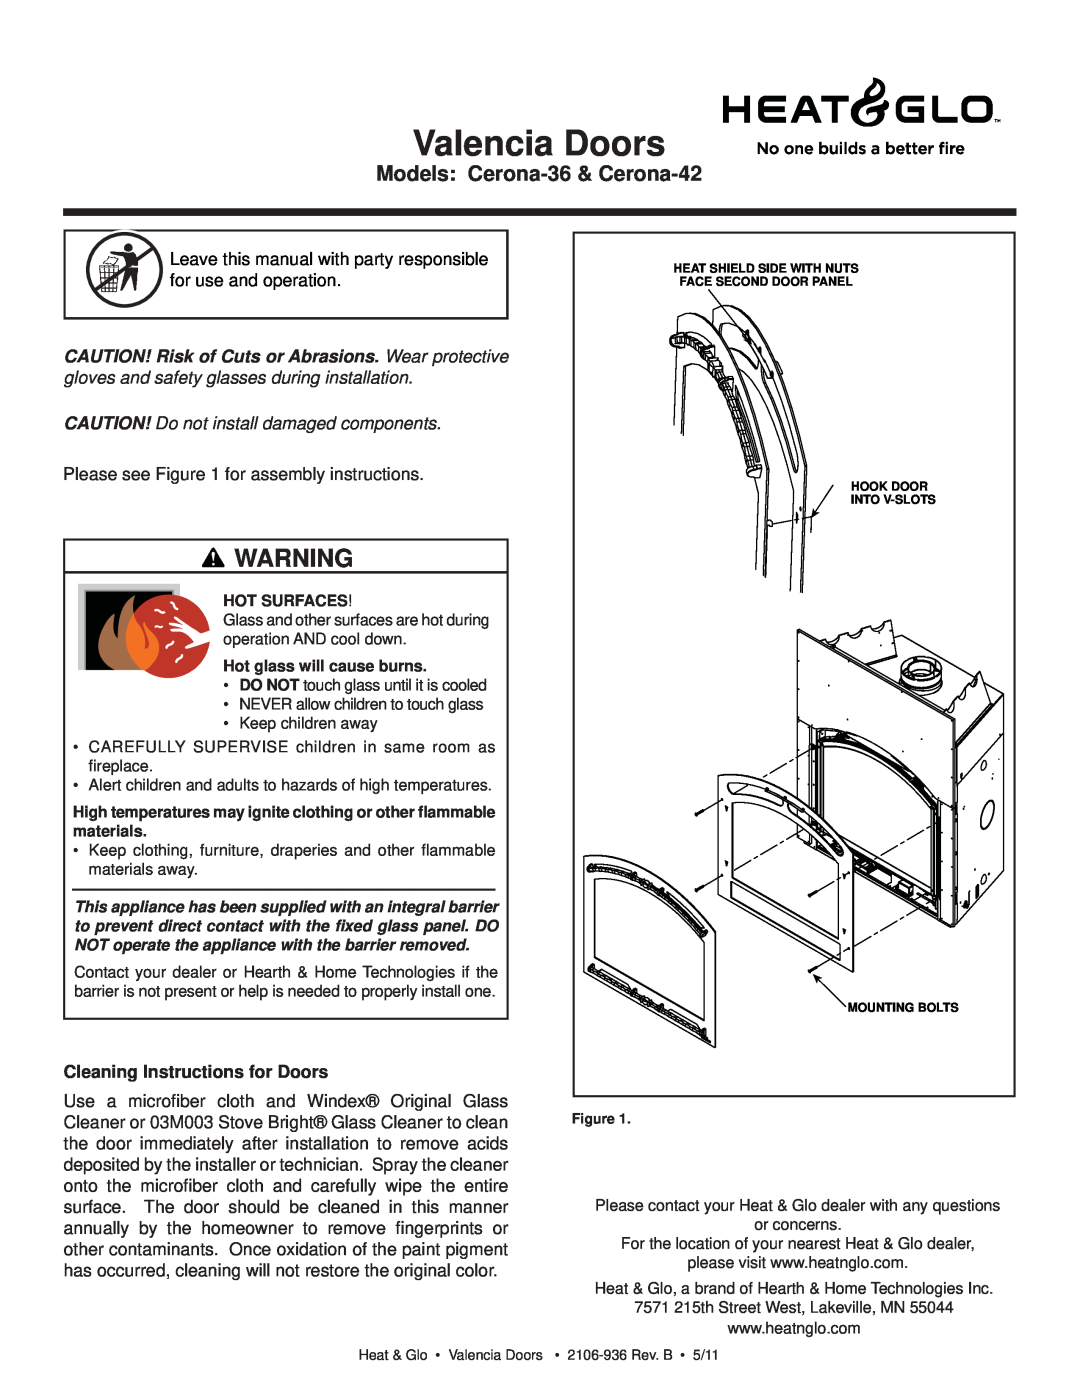 Heat & Glo LifeStyle CERONA-36 manual Valencia Doors, Models Cerona-36& Cerona-42, Please see for assembly instructions 